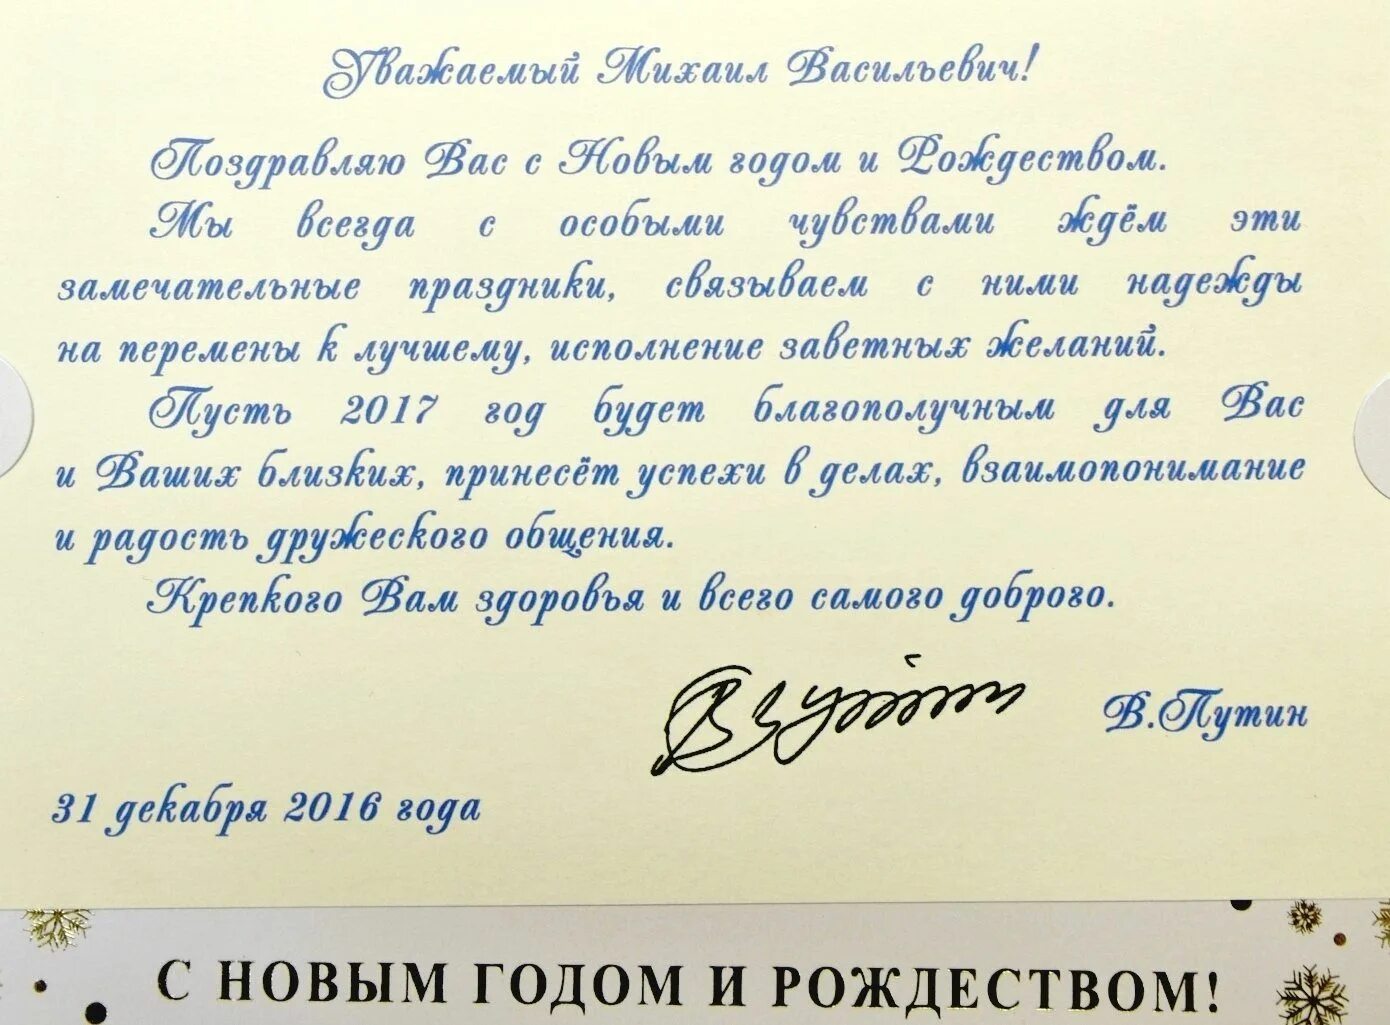 Поздравление губернатора с новым годом. Официальные поздравление с днём рождения от Путина. Официальное поздравление президента с днем рождения. Поздравление с новым годом официальное от губернатора. Дата обращения президента